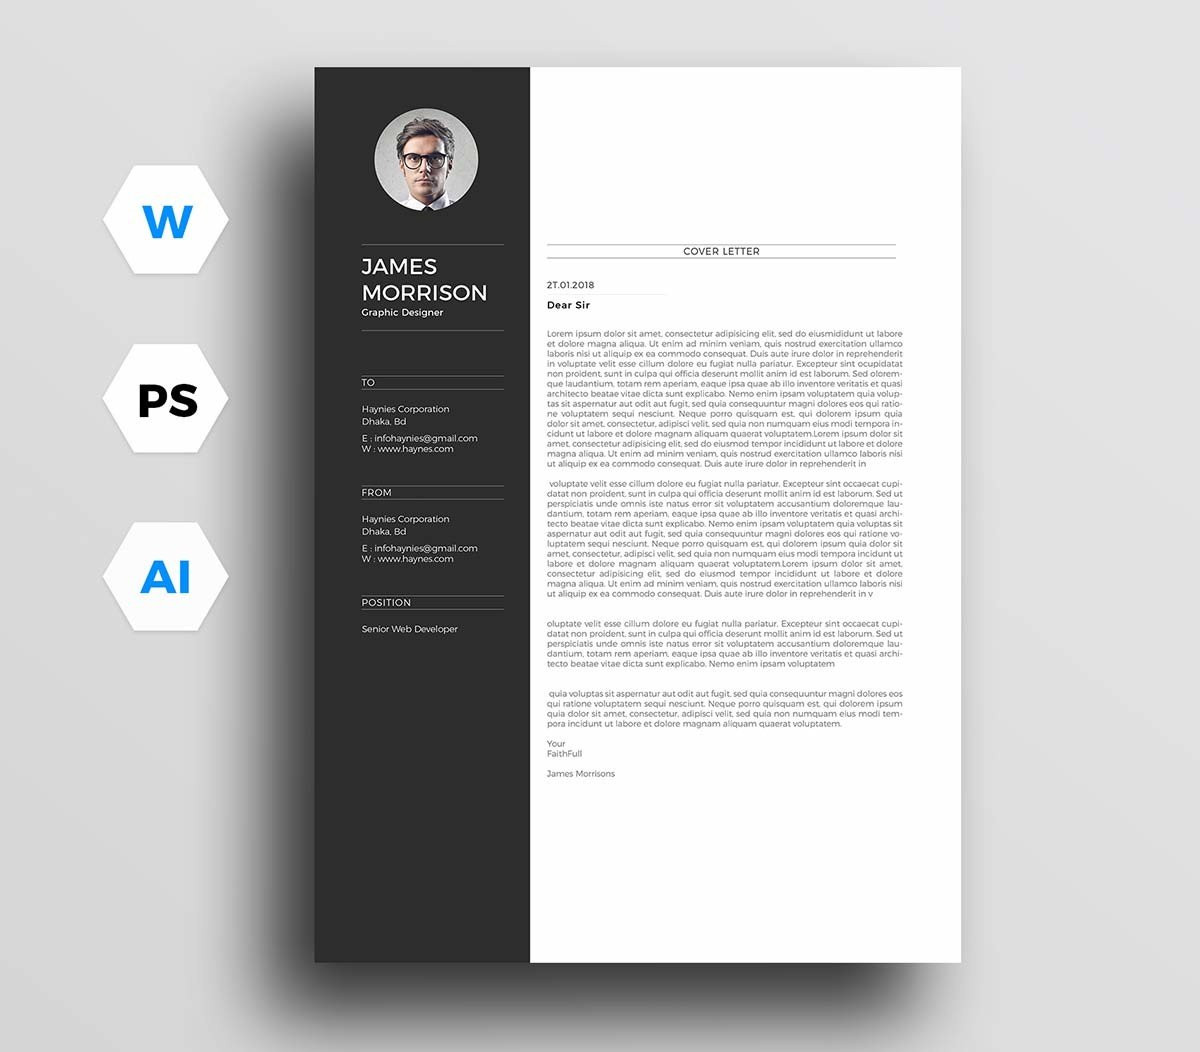 Sample Cover Letter for Resume Microsoft Word 12 Cover Letter Templates for Microsoft Word (free Download)